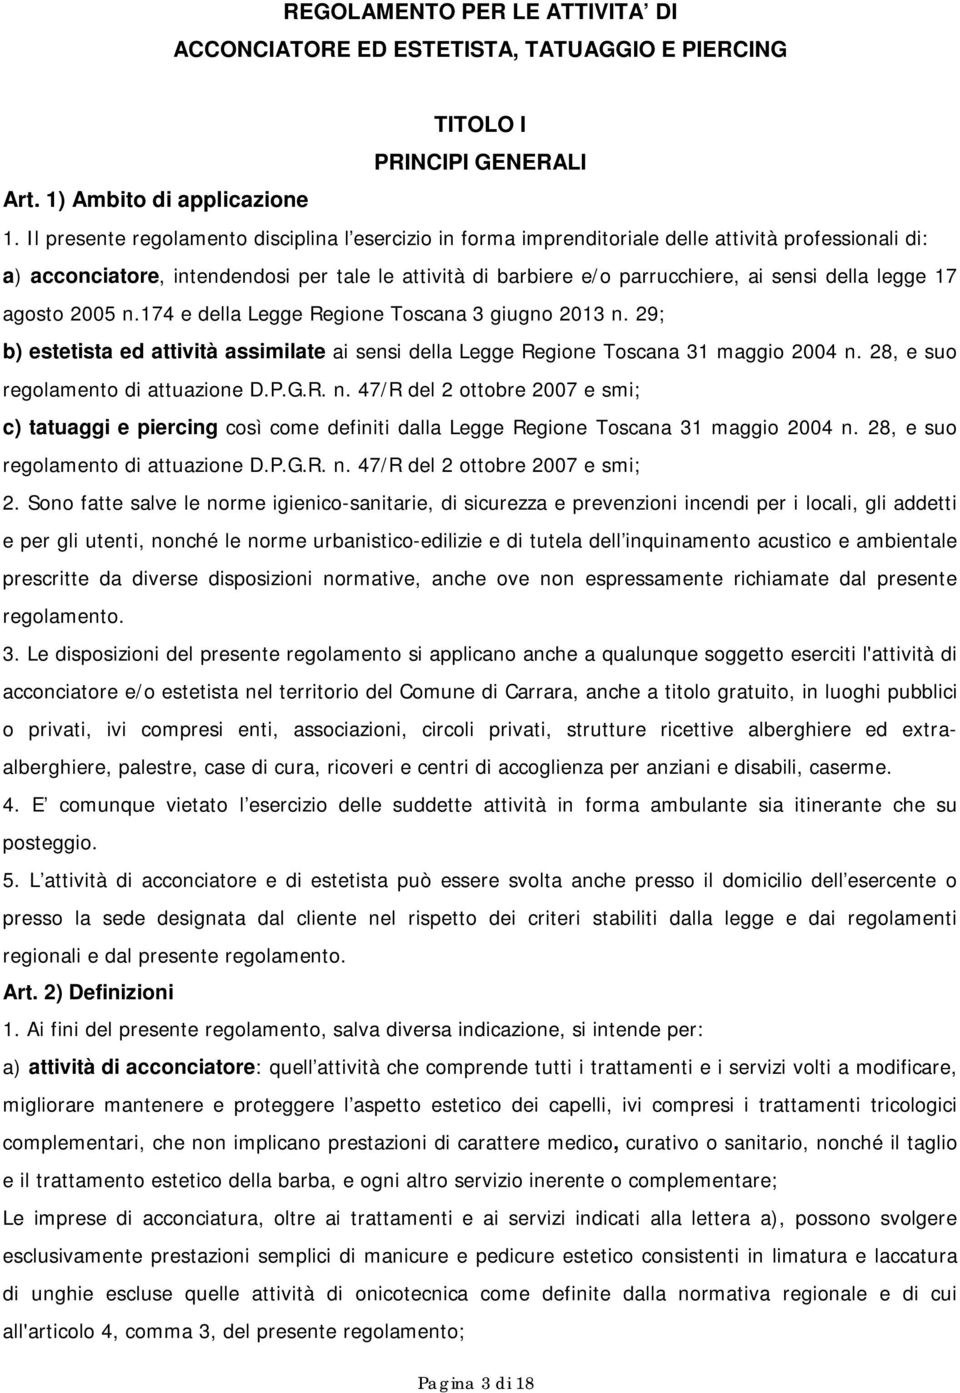 della legge 17 agosto 2005 n.174 e della Legge Regione Toscana 3 giugno 2013 n. 29; b) estetista ed attività assimilate ai sensi della Legge Regione Toscana 31 maggio 2004 n.